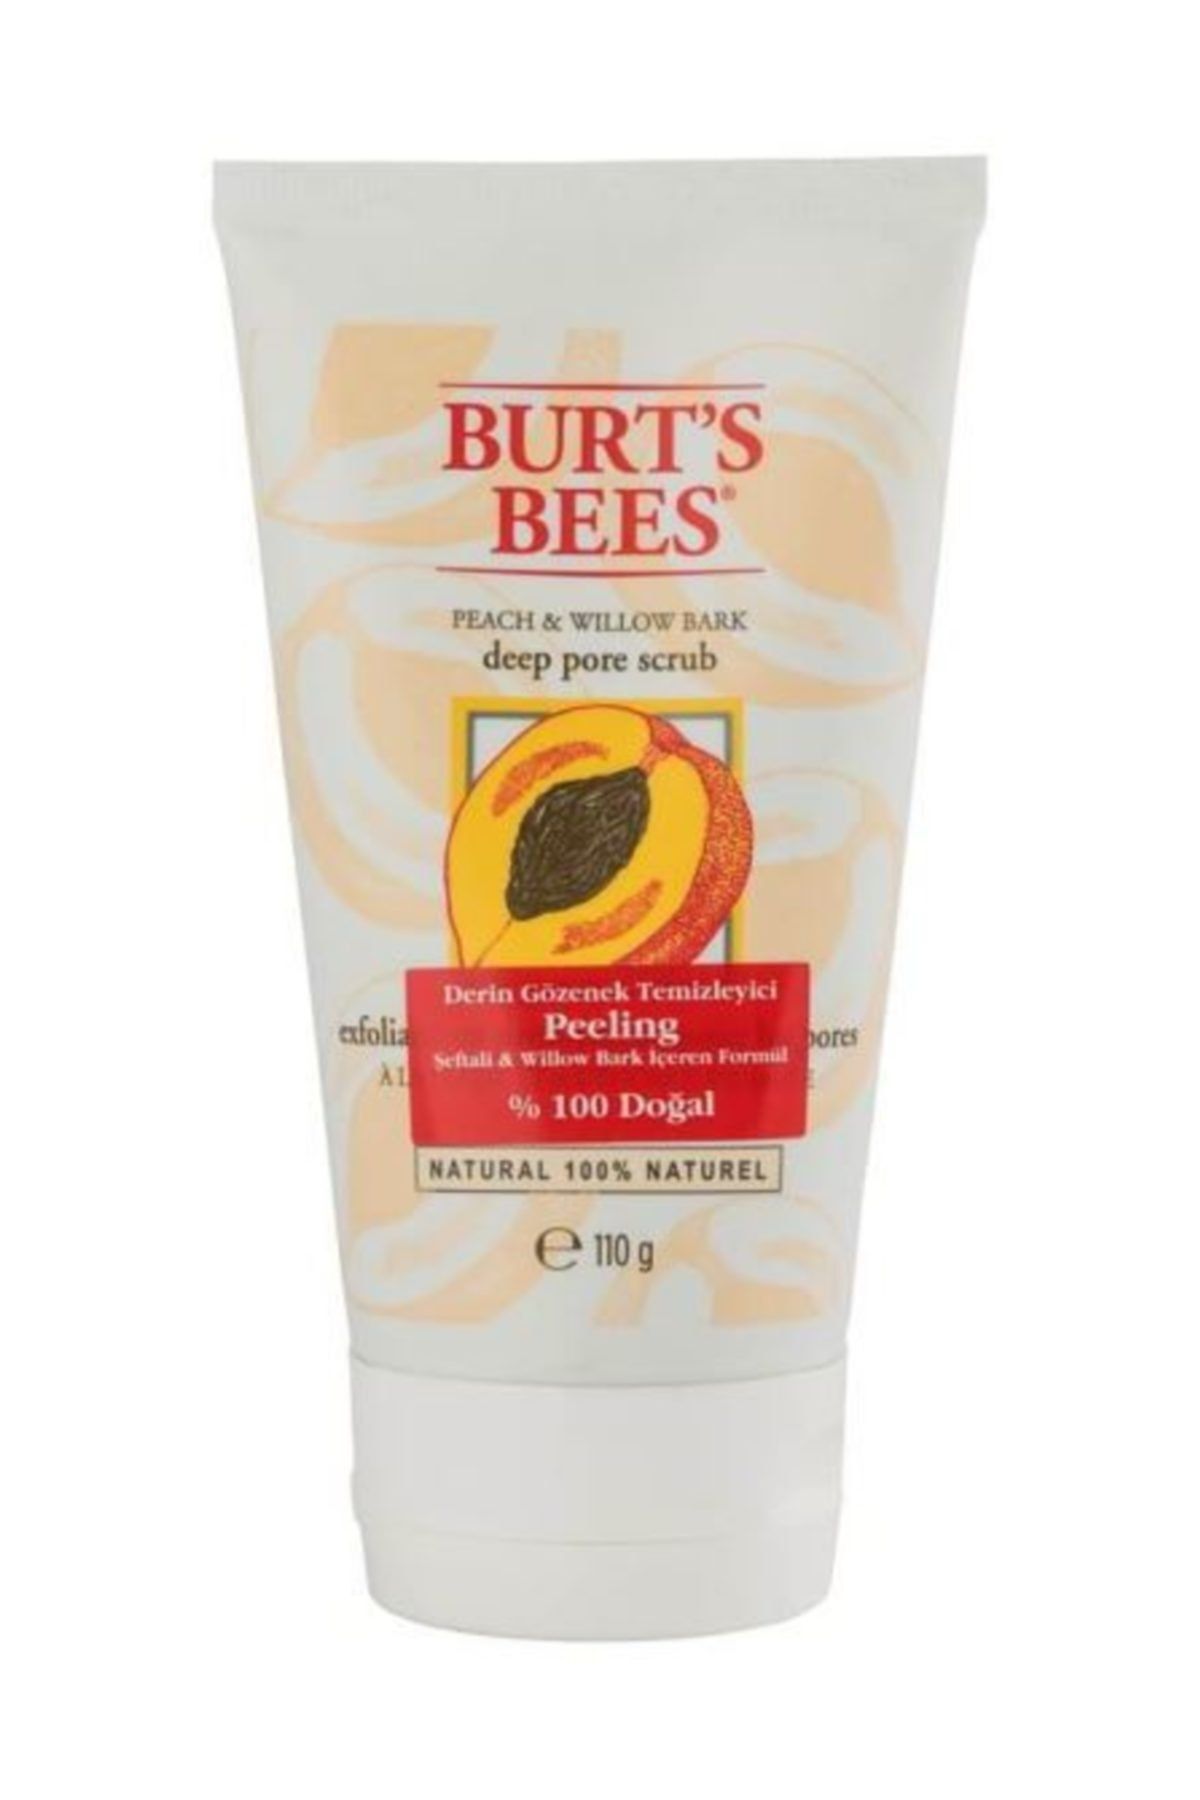 Burt's Bees %100 Doğal Gözenek Temizleyici Peeling Şeftali & Willow Bark 110 g 792850891005